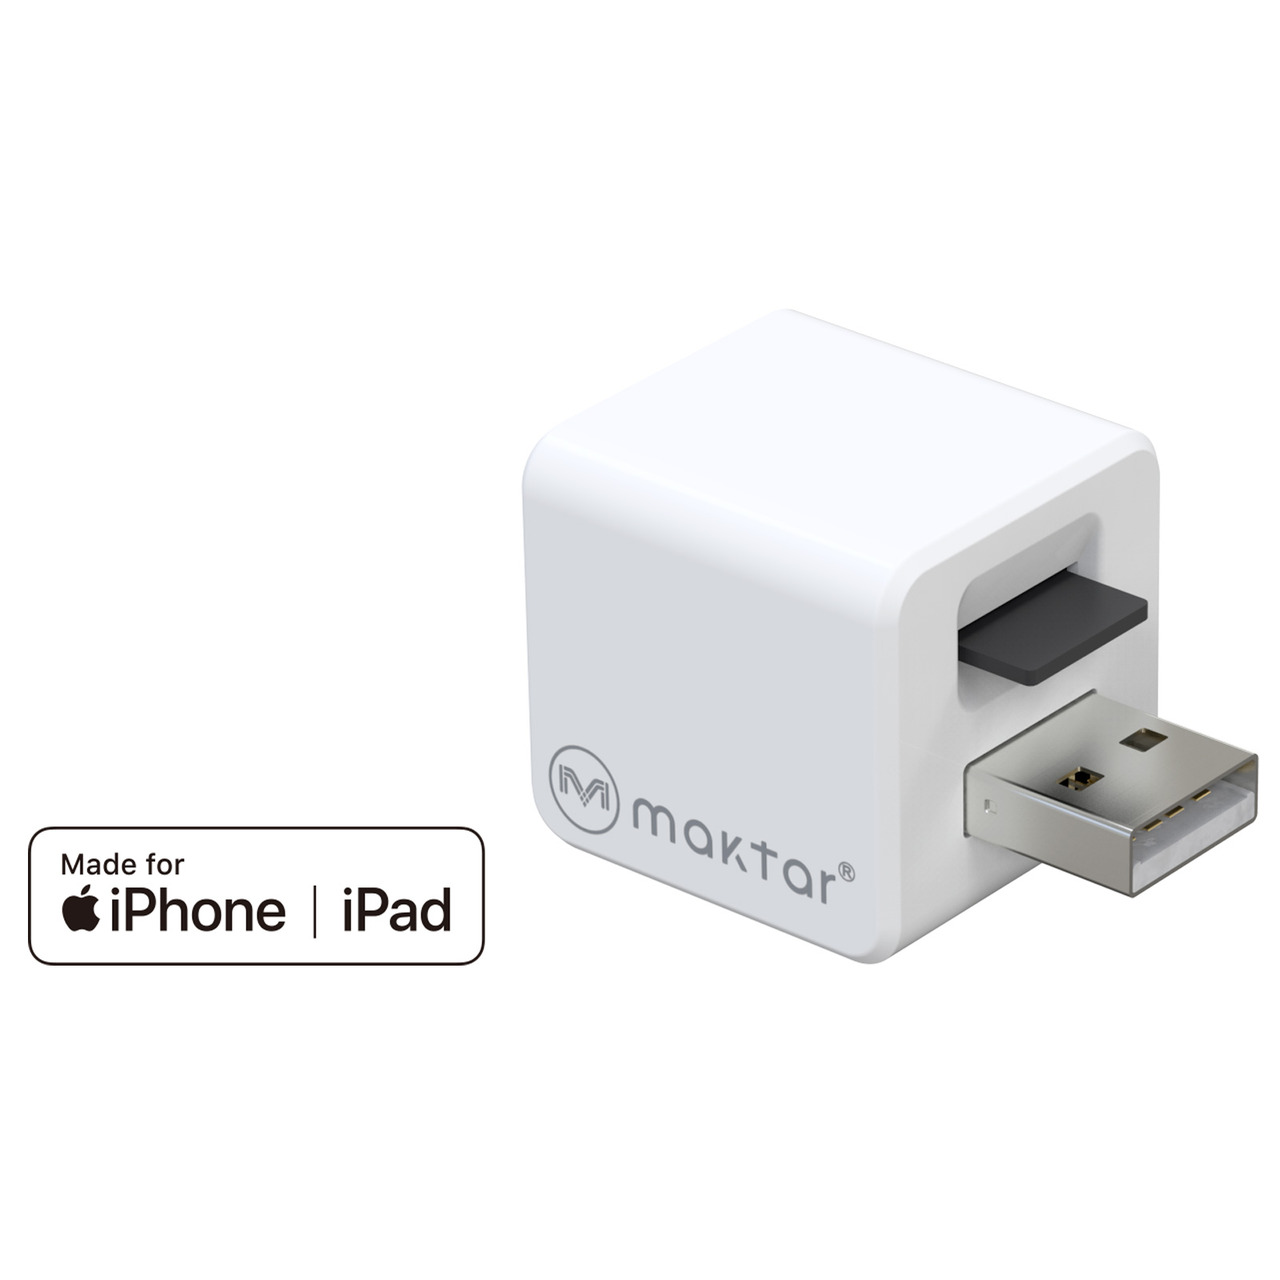 Maktar Auto-Back-up-Adapter Qubii- für iPhone-iPad- speichert Bilder-Videos-Kontakte auf microSD